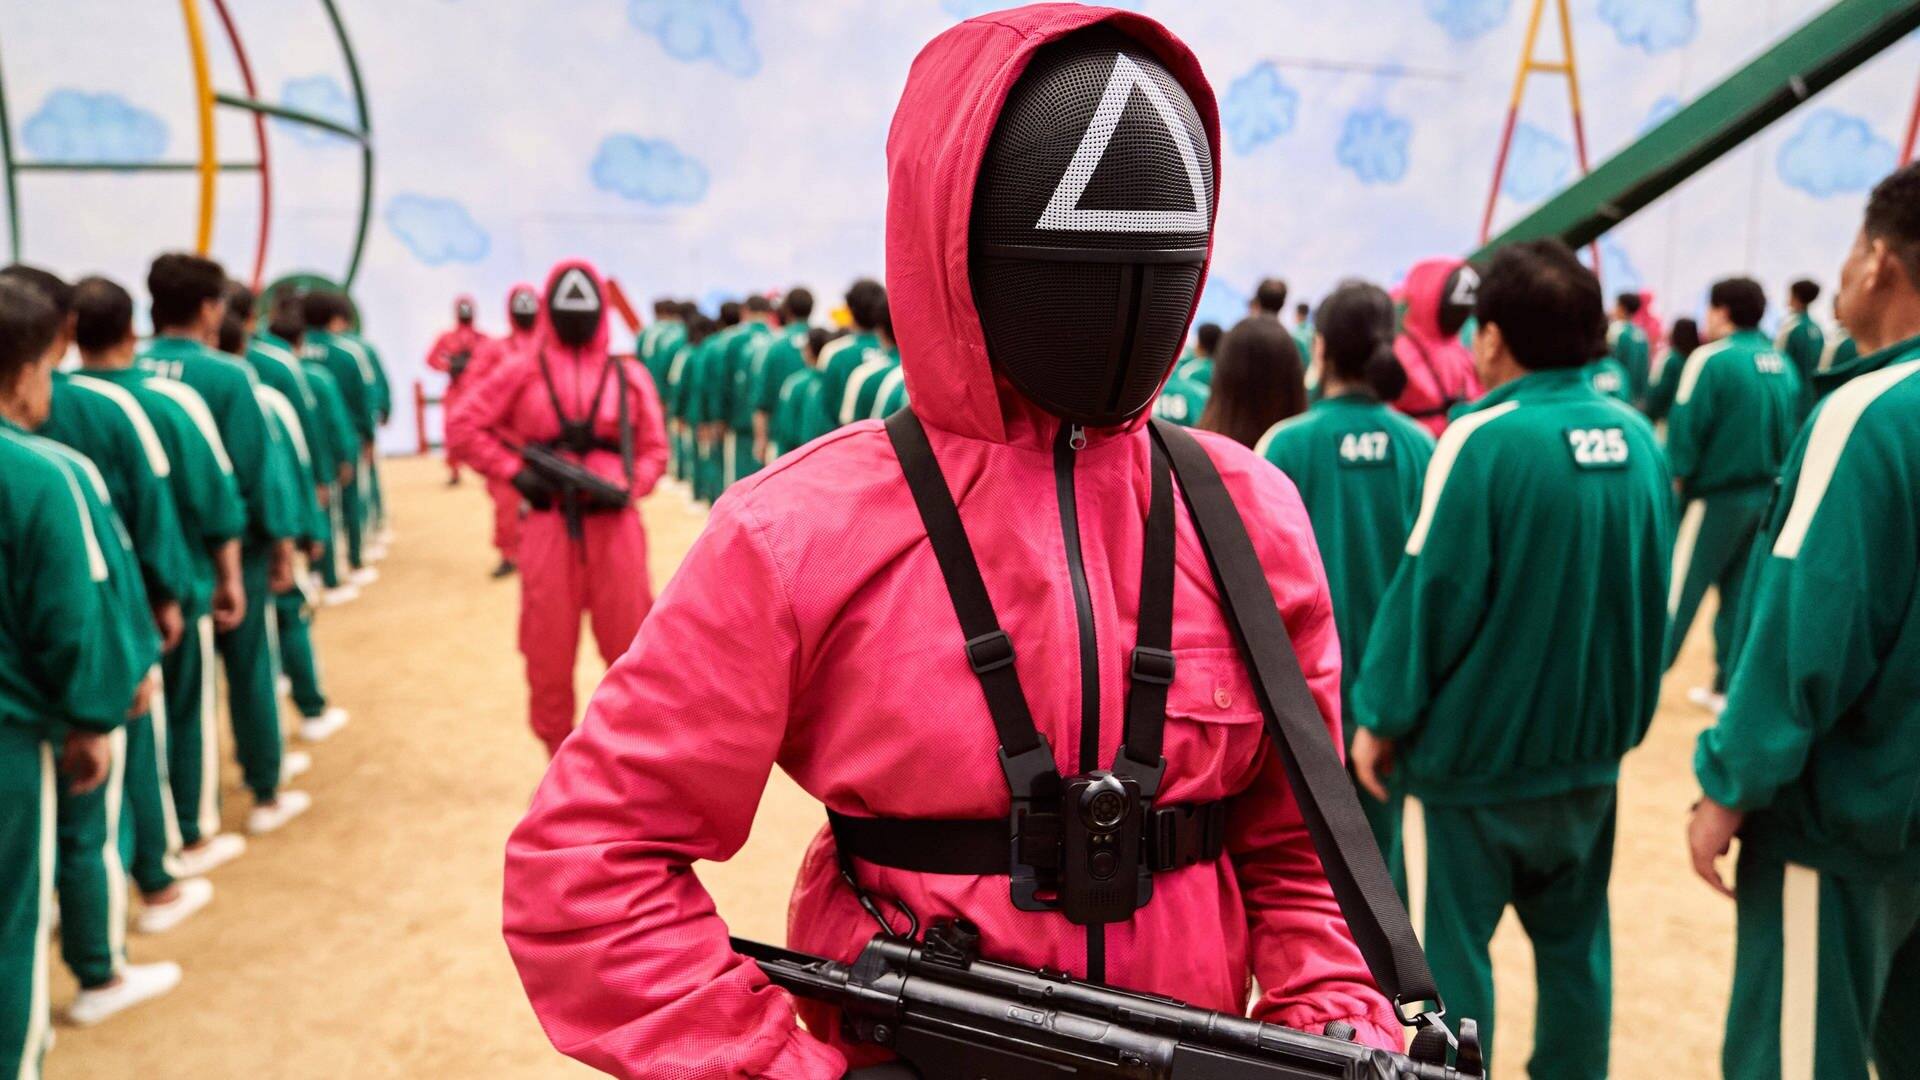 Eine Szene aus der Netflixx-Serie Squid Game. Teilnehmer der Spiele stehen, mit grünen Anzügen bekleidet, in einer Reihe und werden von bewaffneten Personen in roten Anzügen bewacht.  (Foto: IMAGO, Netflix)